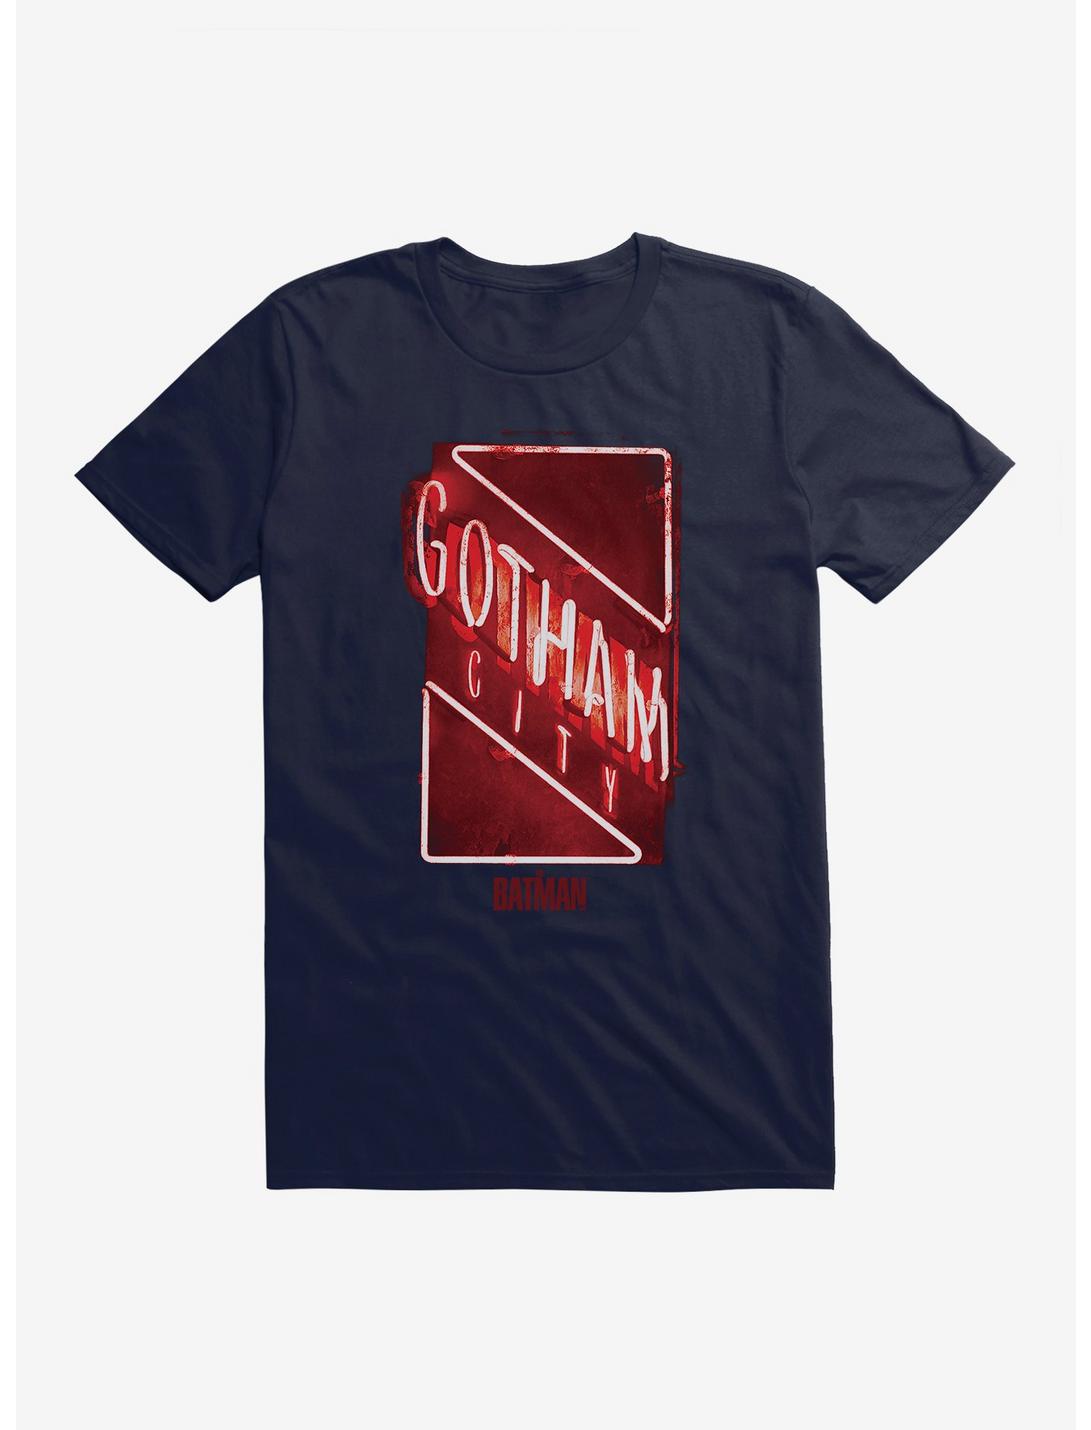 DC Comics The Batman Gotham City Neon Sign T-Shirt, , hi-res